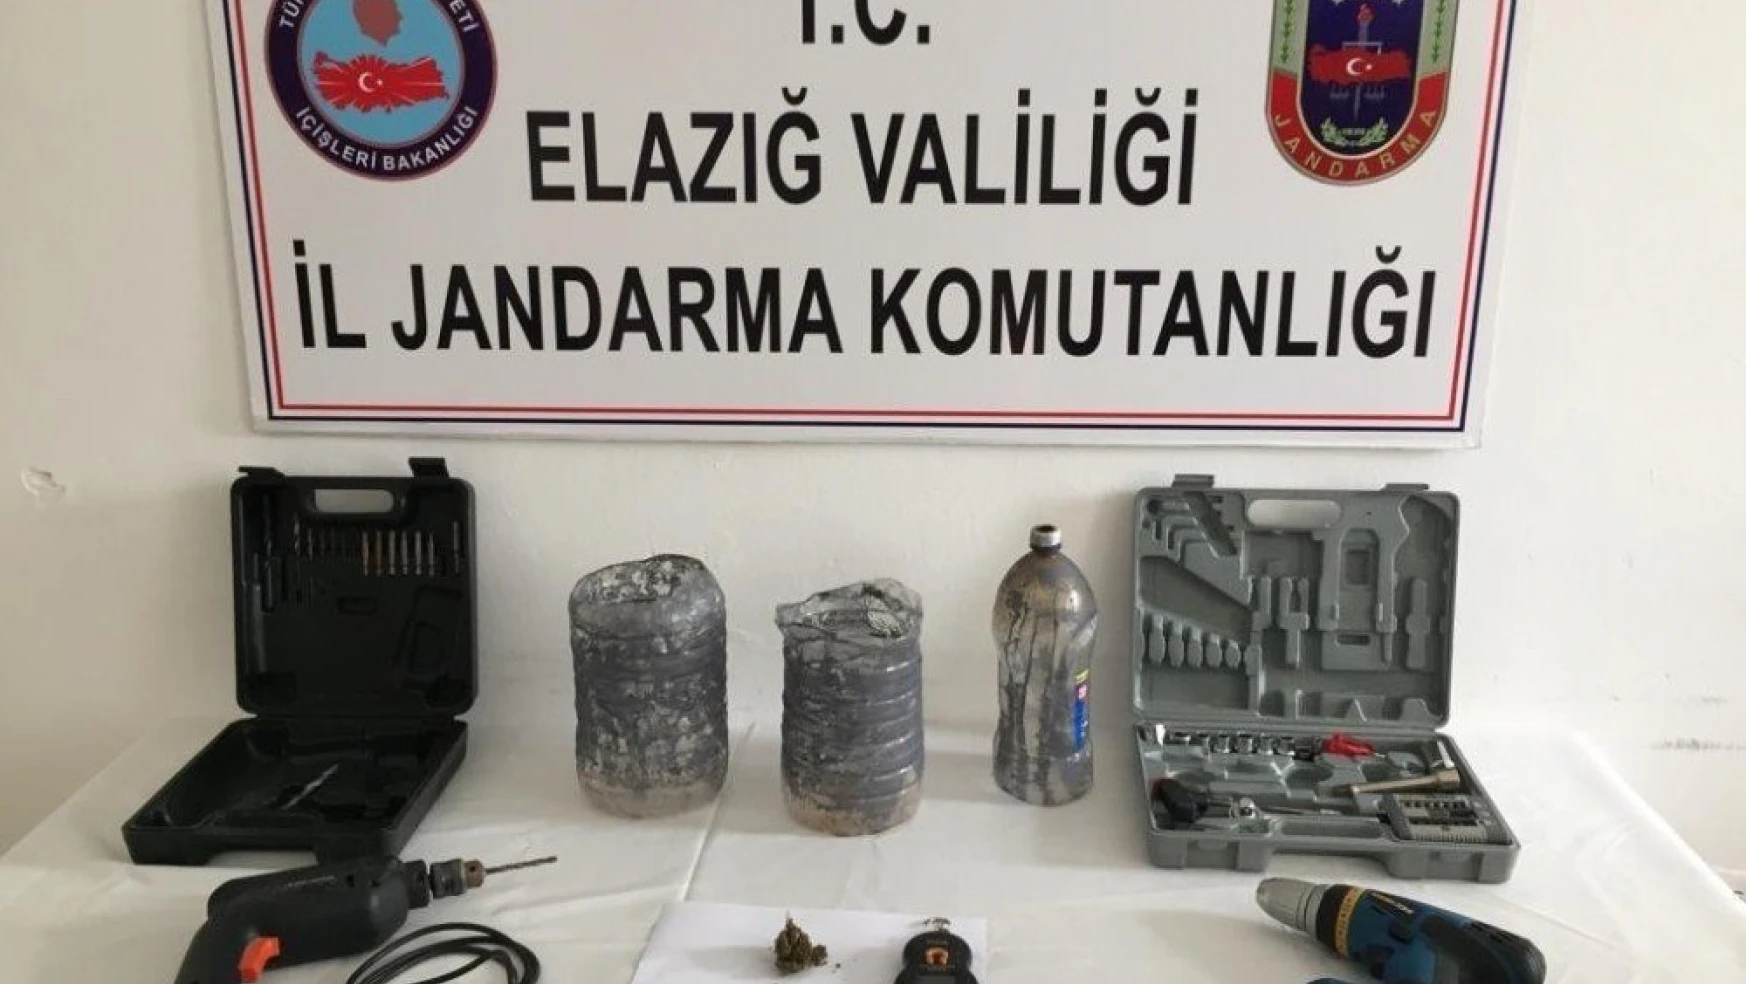 Elazığ'da Hırsızlık ve Uyuşturucu Operasyonu, 1 Tutuklama